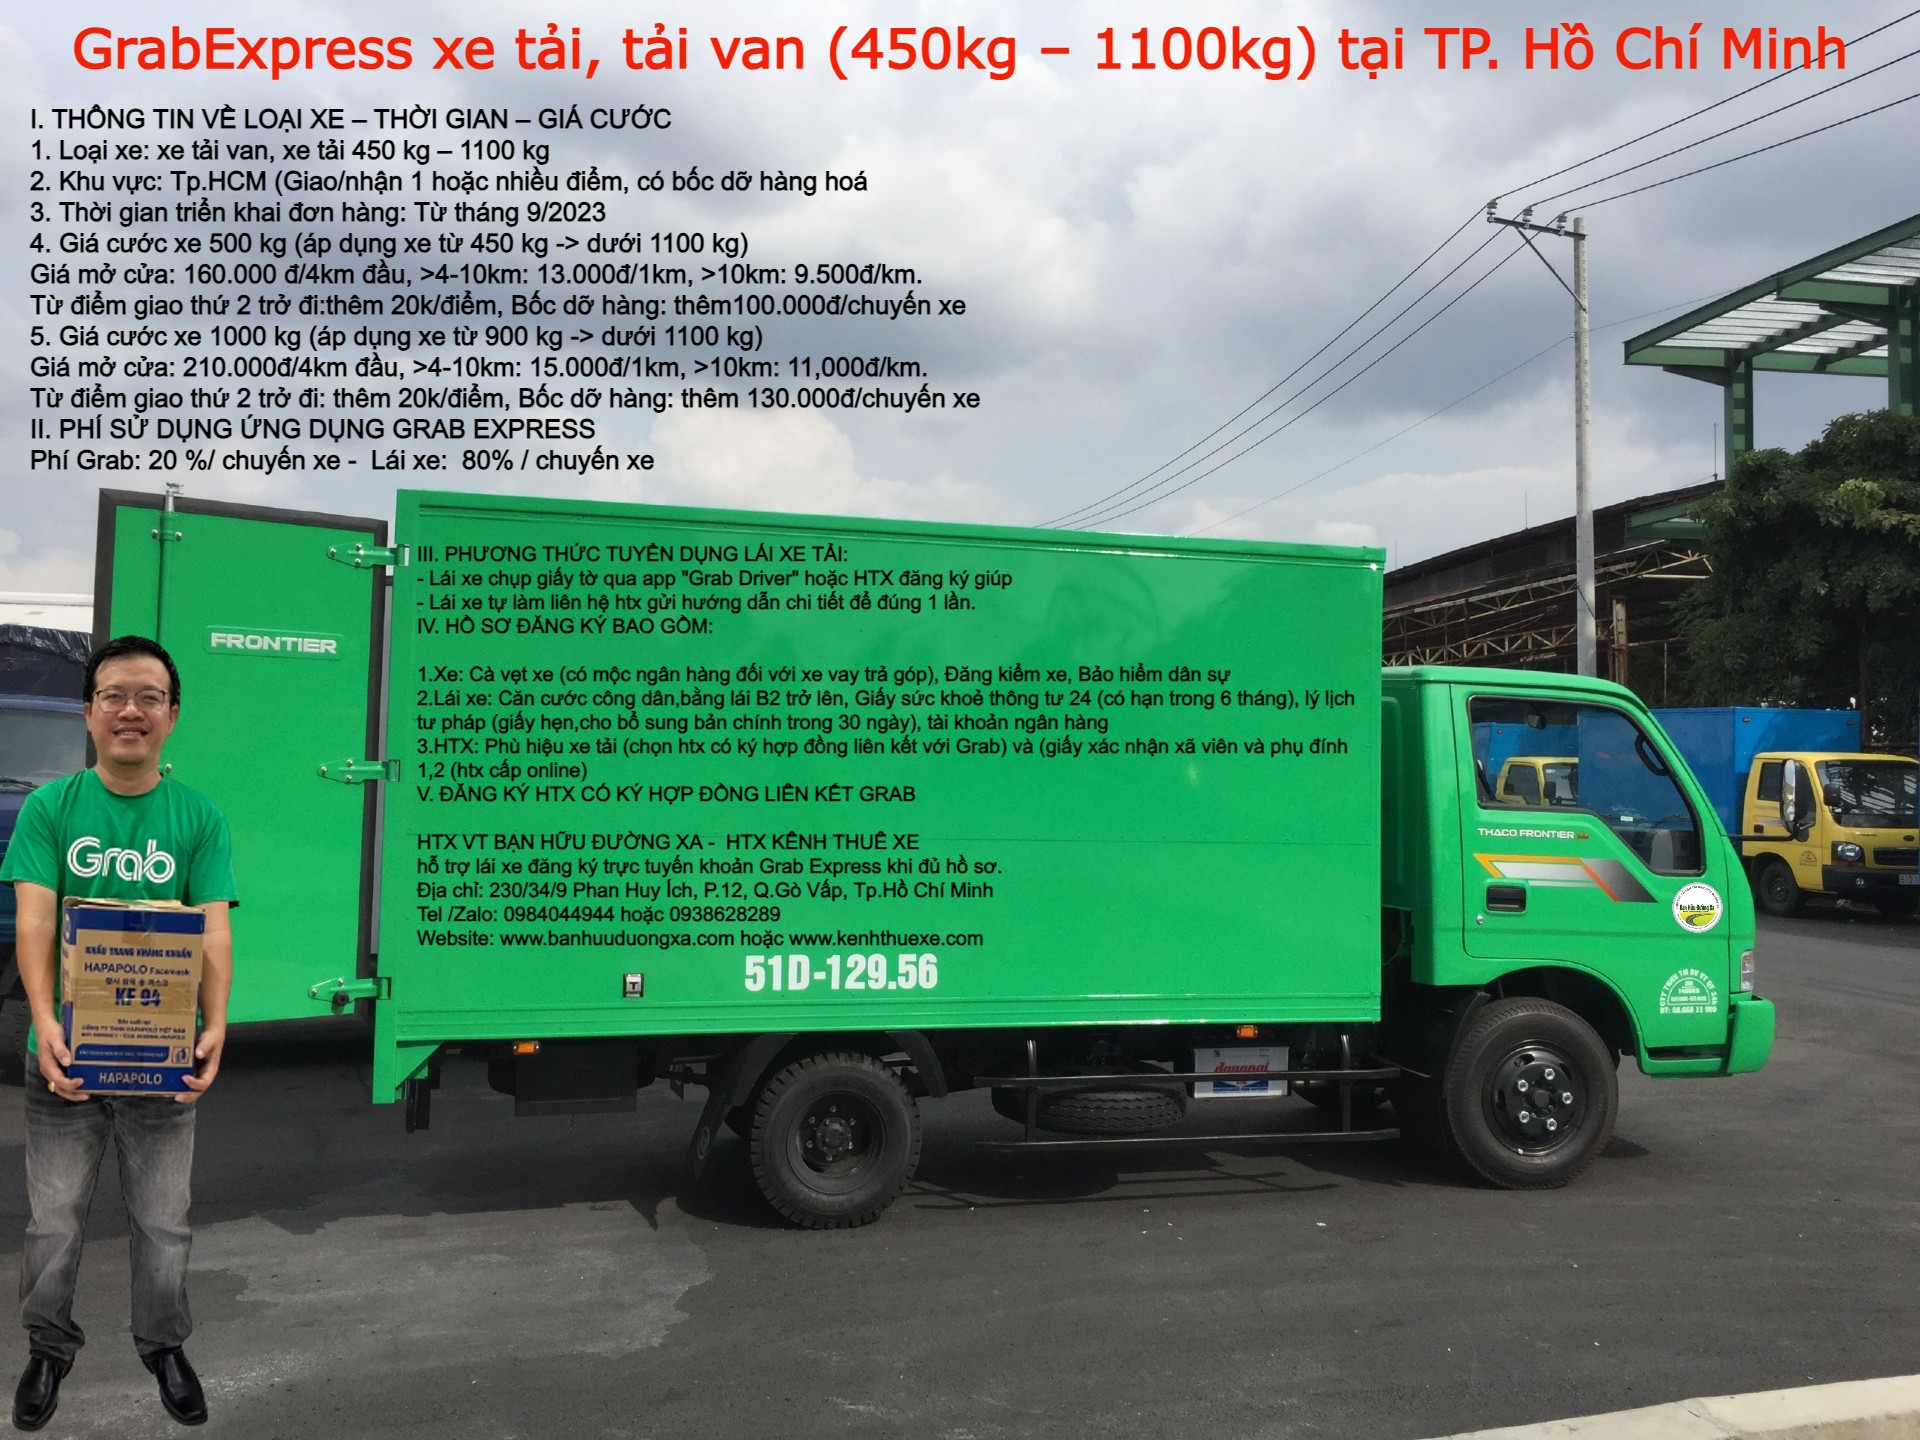 Đăng ký HTX mở tài khoản tài xế xe tải van Grab Express giao hàng ở TpHCM